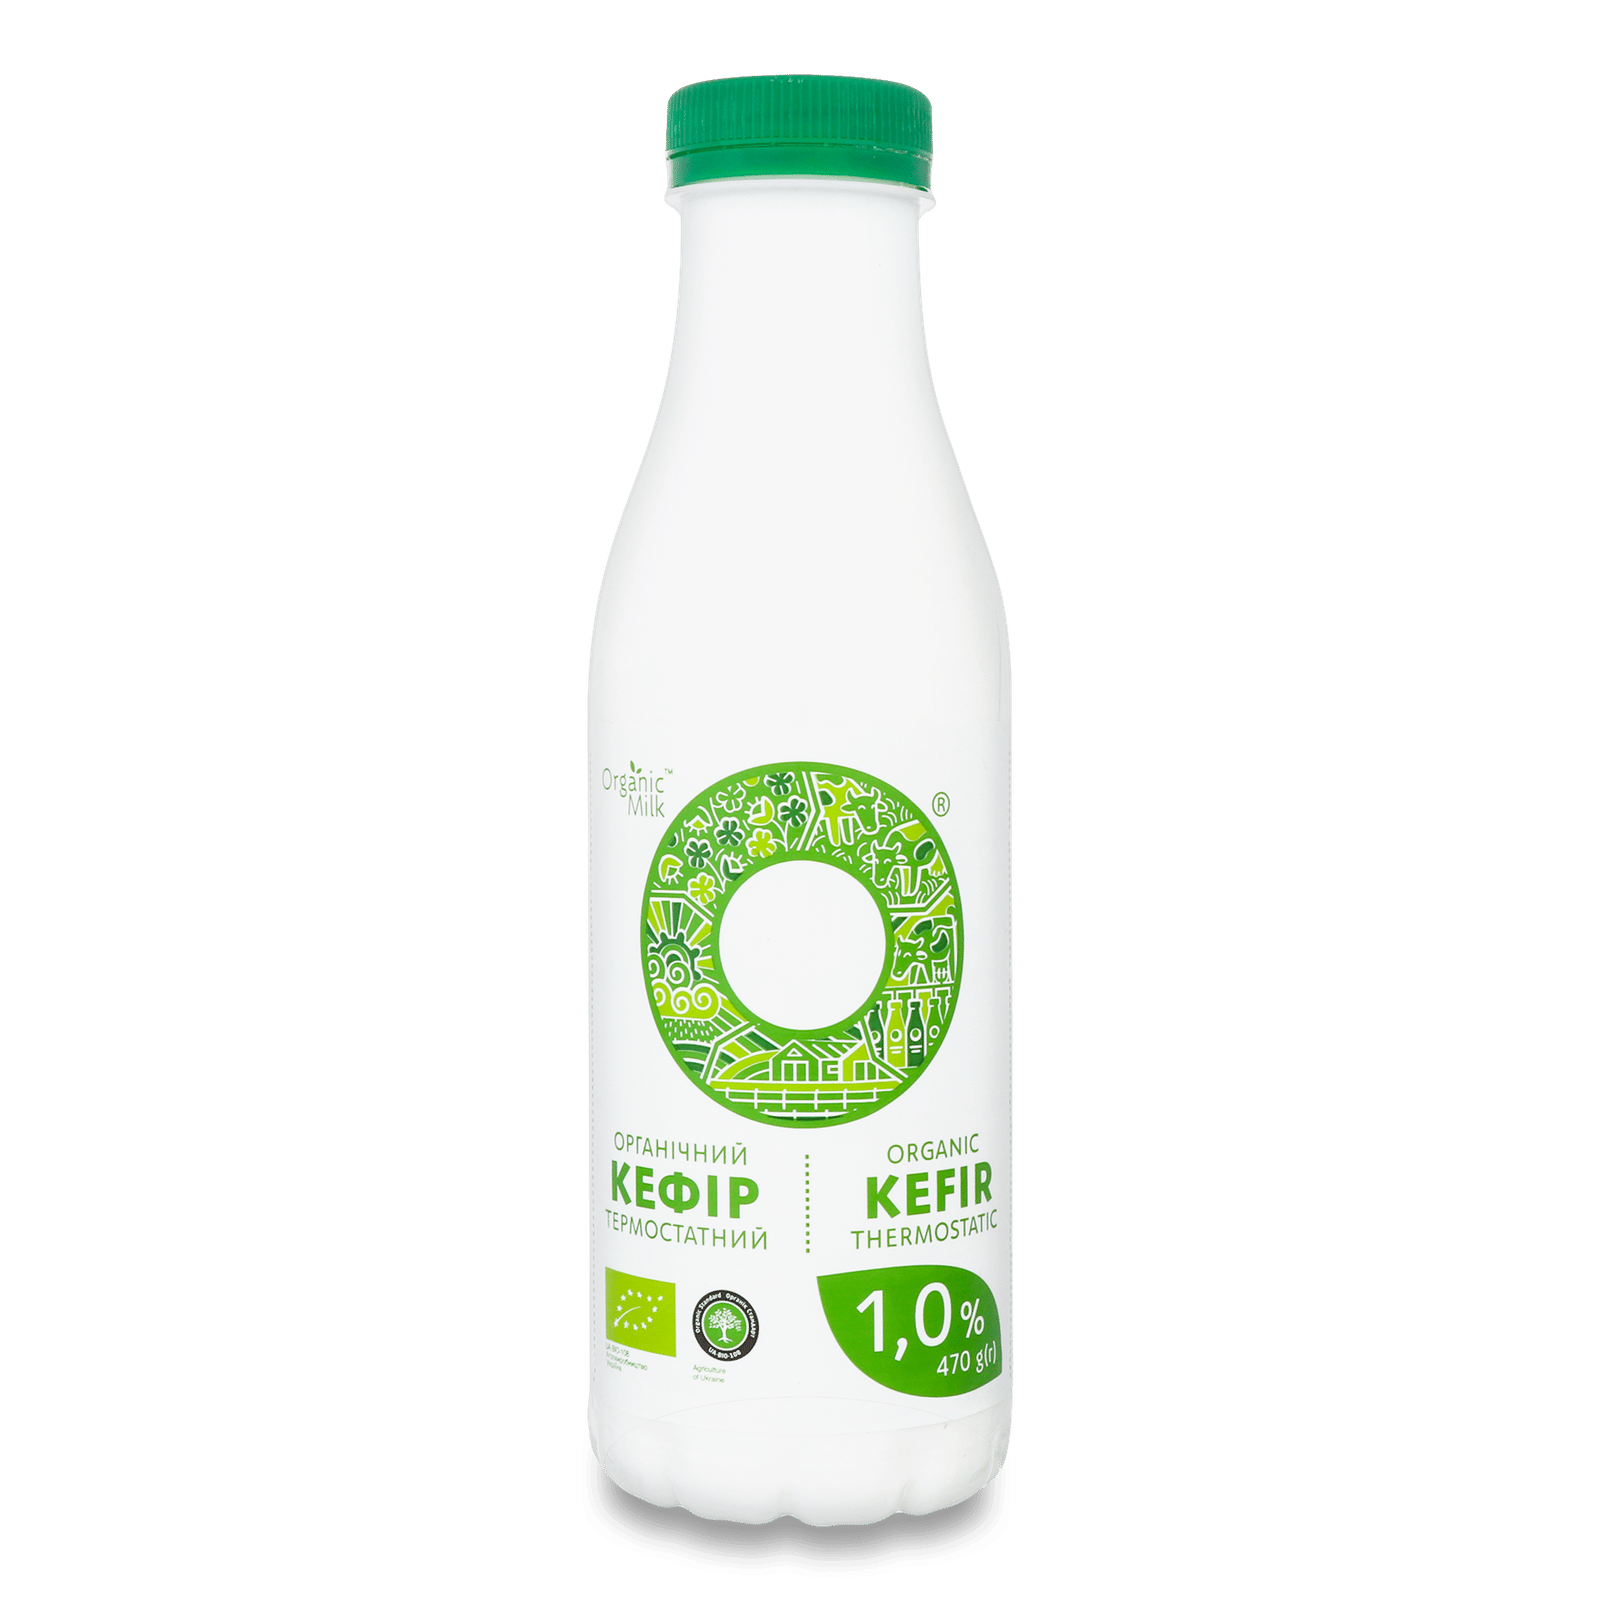 Кефір Organic Milk термостатний органічний 1%  - 1